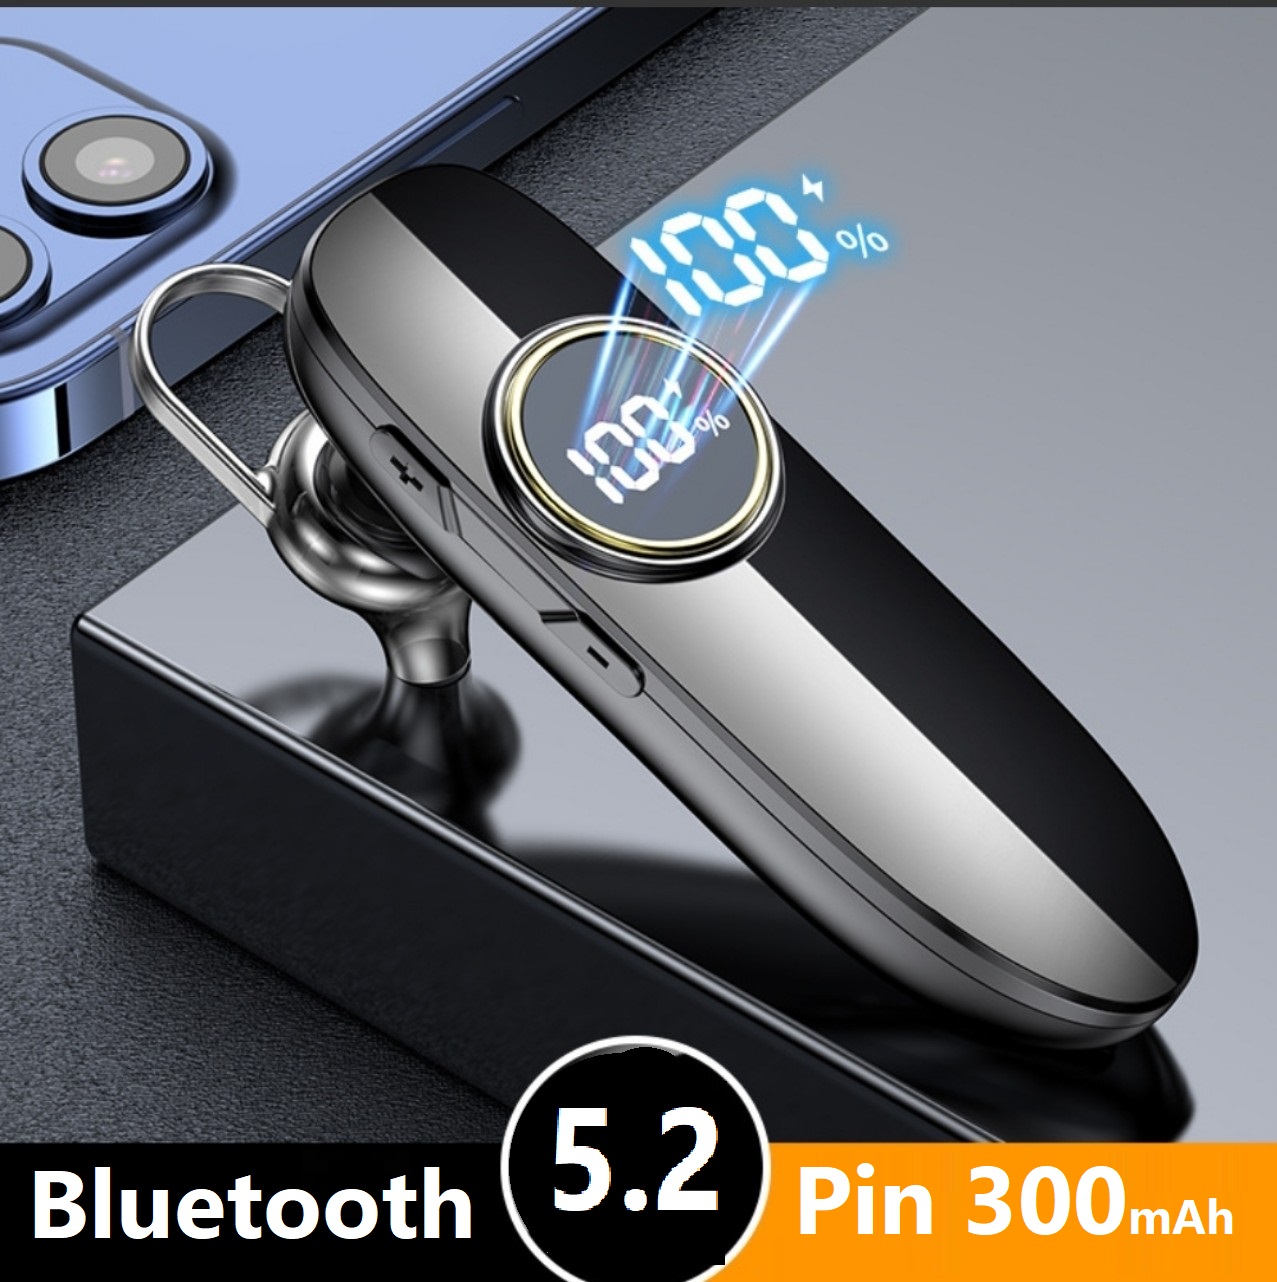 Tai Nghe Bluetooth Không Dây Chip 5.2 Màn Hình Led , Dung Lượng Pin Lớn 300mAh Có Thể  Sử Dụng Liên Tục Từ 20h - 40h .